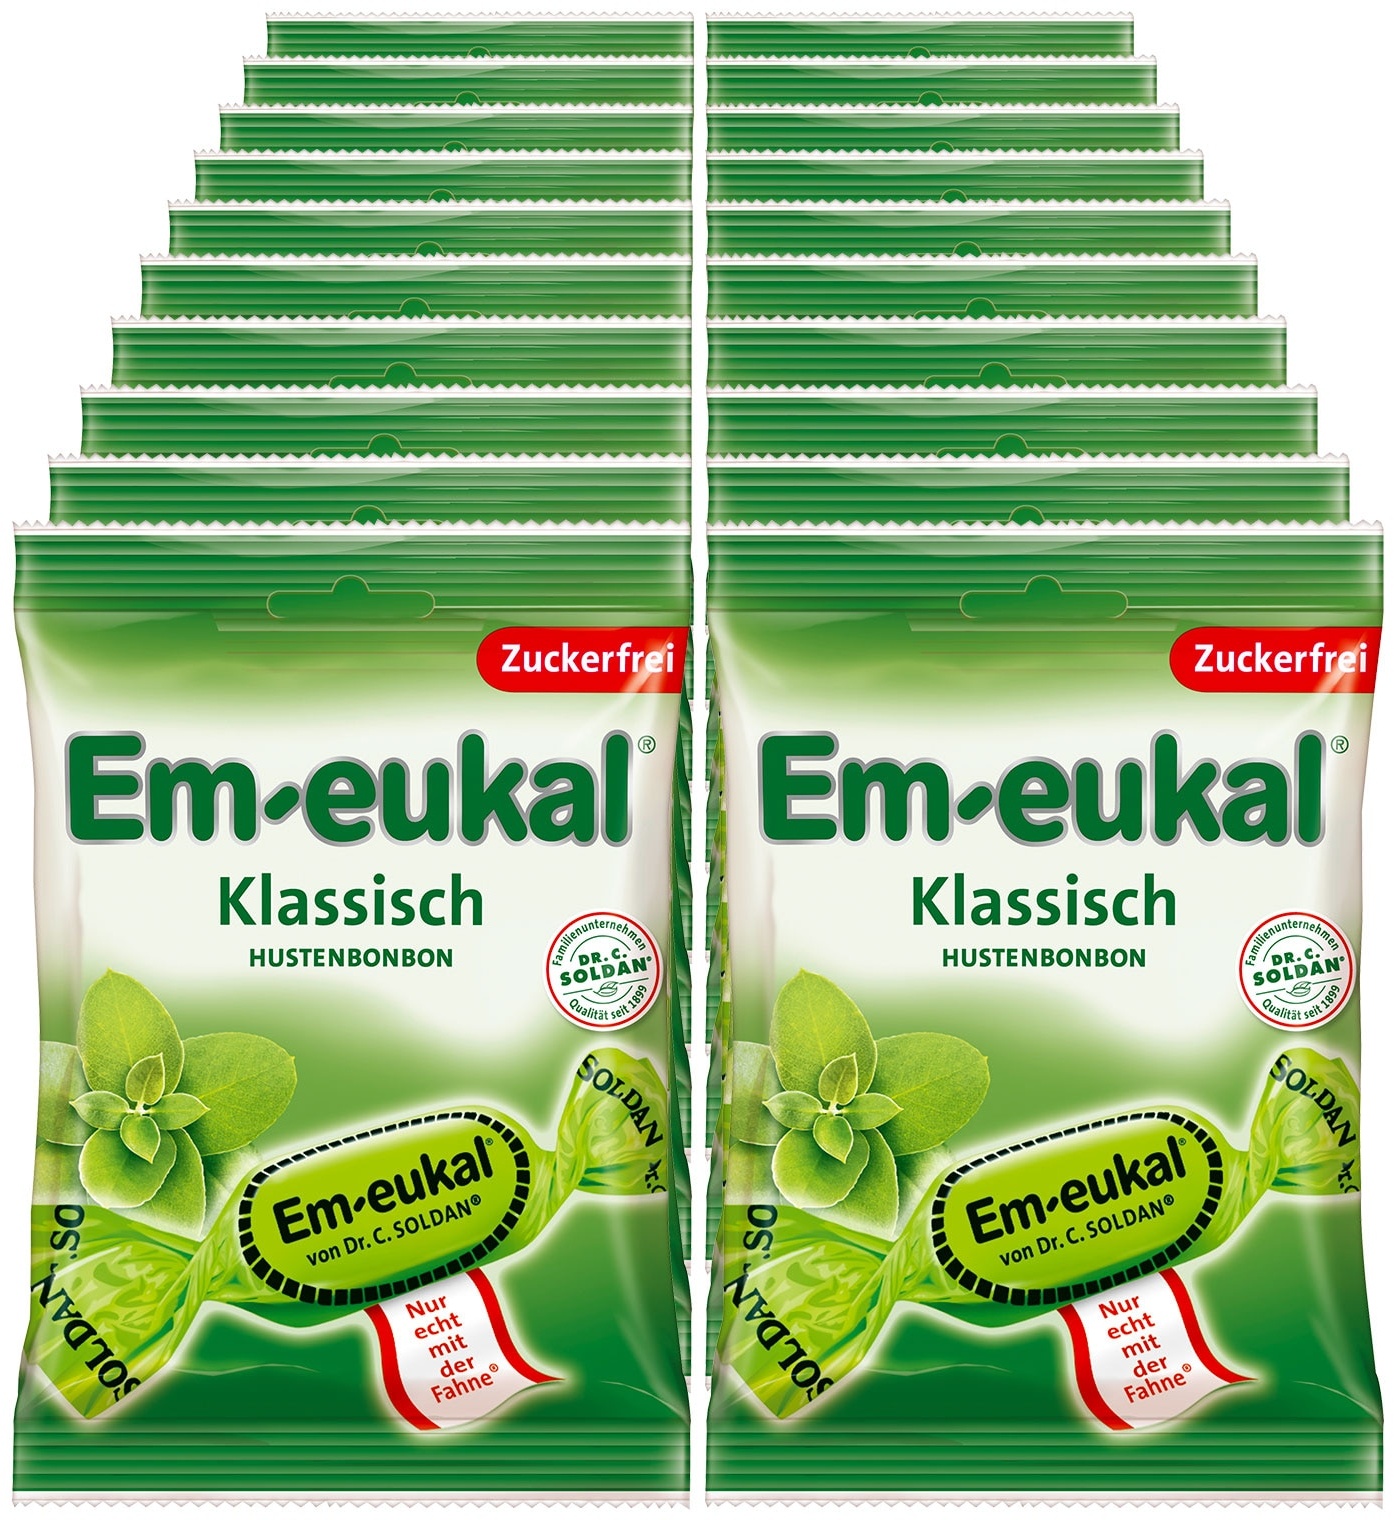 Em-eukal Klassisch zuckerfrei 75 g, 20er Pack